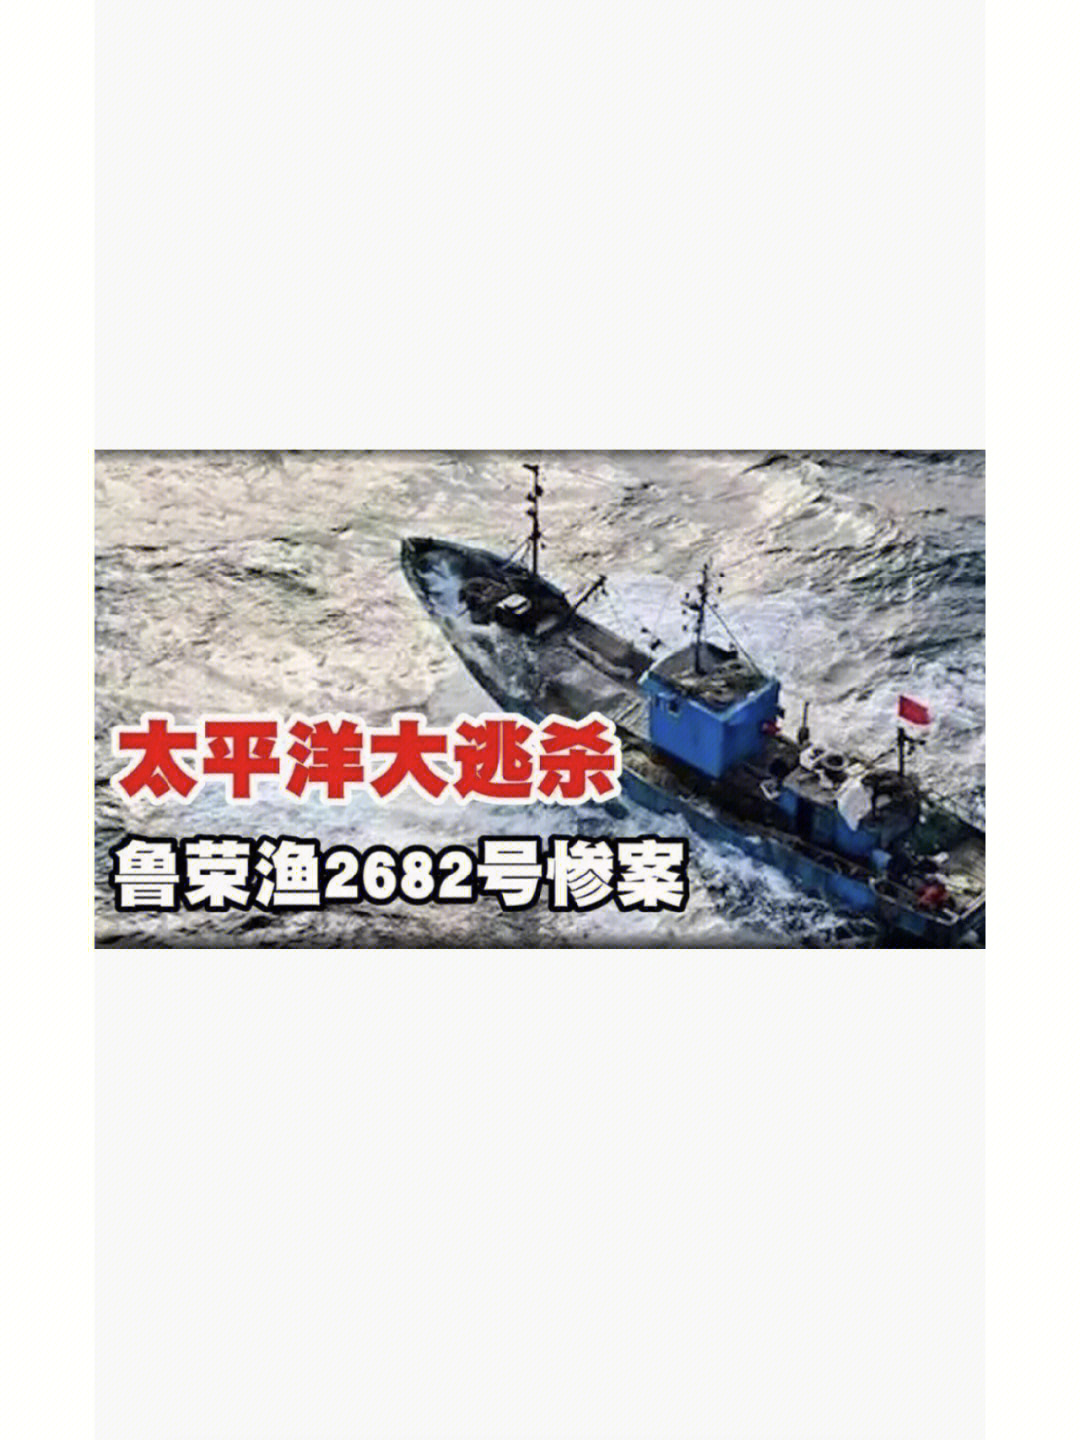 随着船长李承权一声令下,载有33名船员的鲁荣渔2682号大型鱿钓船伴着